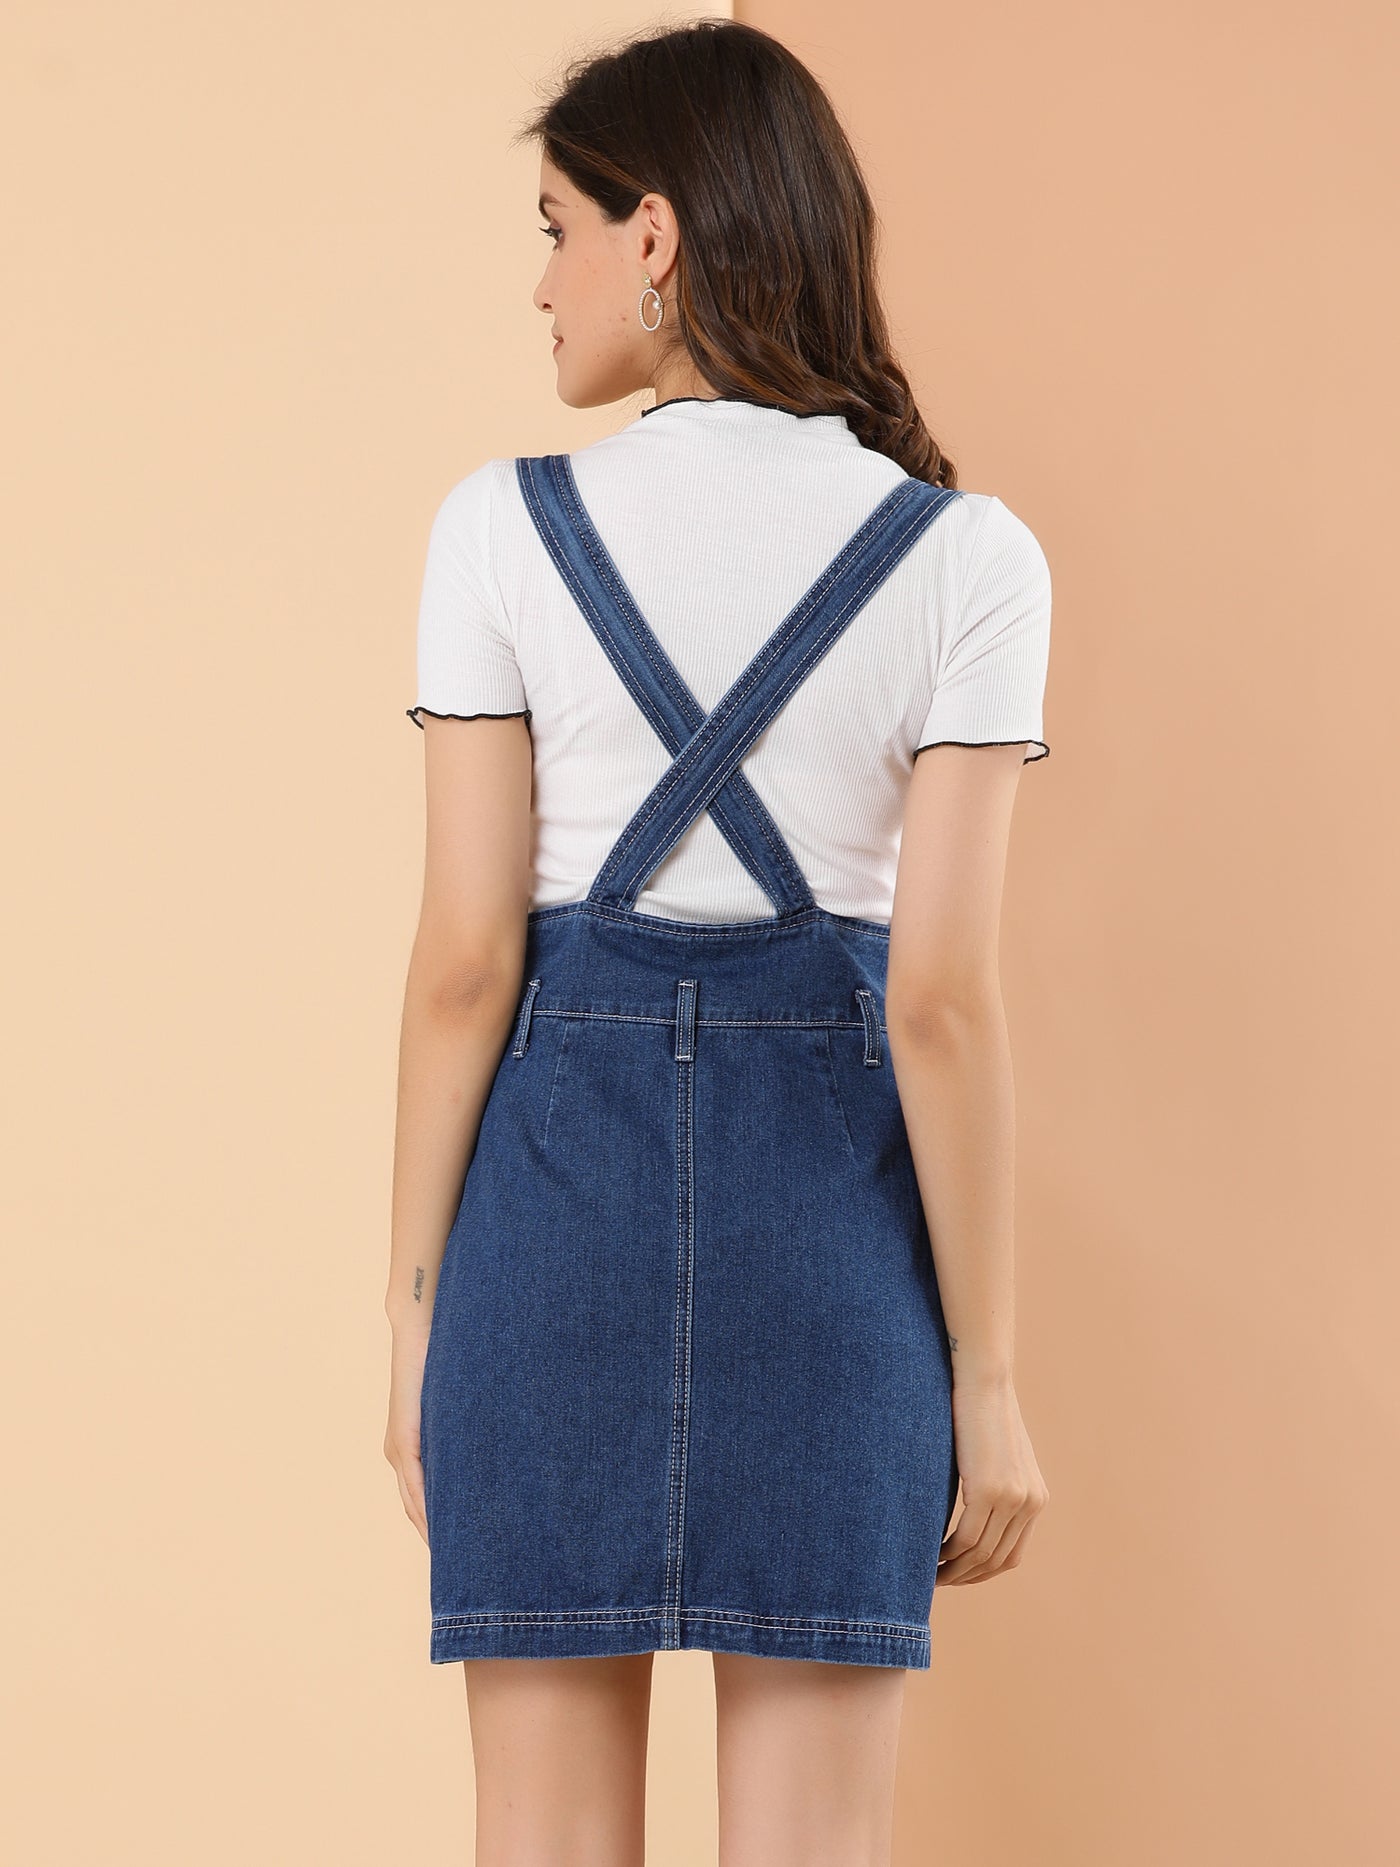 Allegra K Casual Button Down Adjustable Strap Denim Overall Suspender Skirt